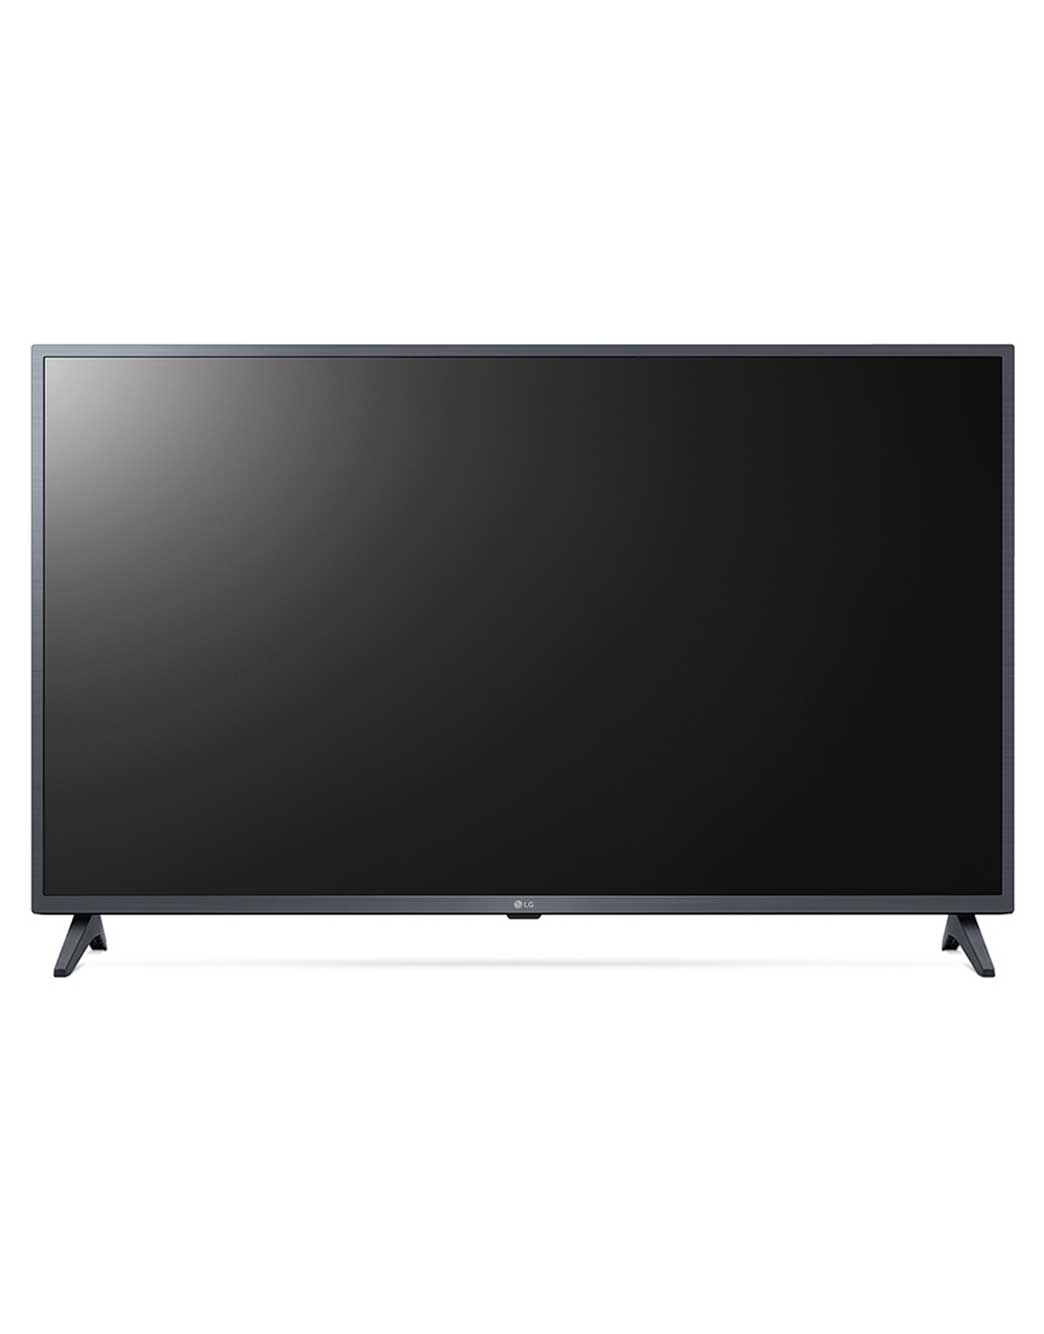 Pantalla LG Smart TV 43 pulg. 43UP7500PSF Led IA ThinQ 4K UHD HDMI